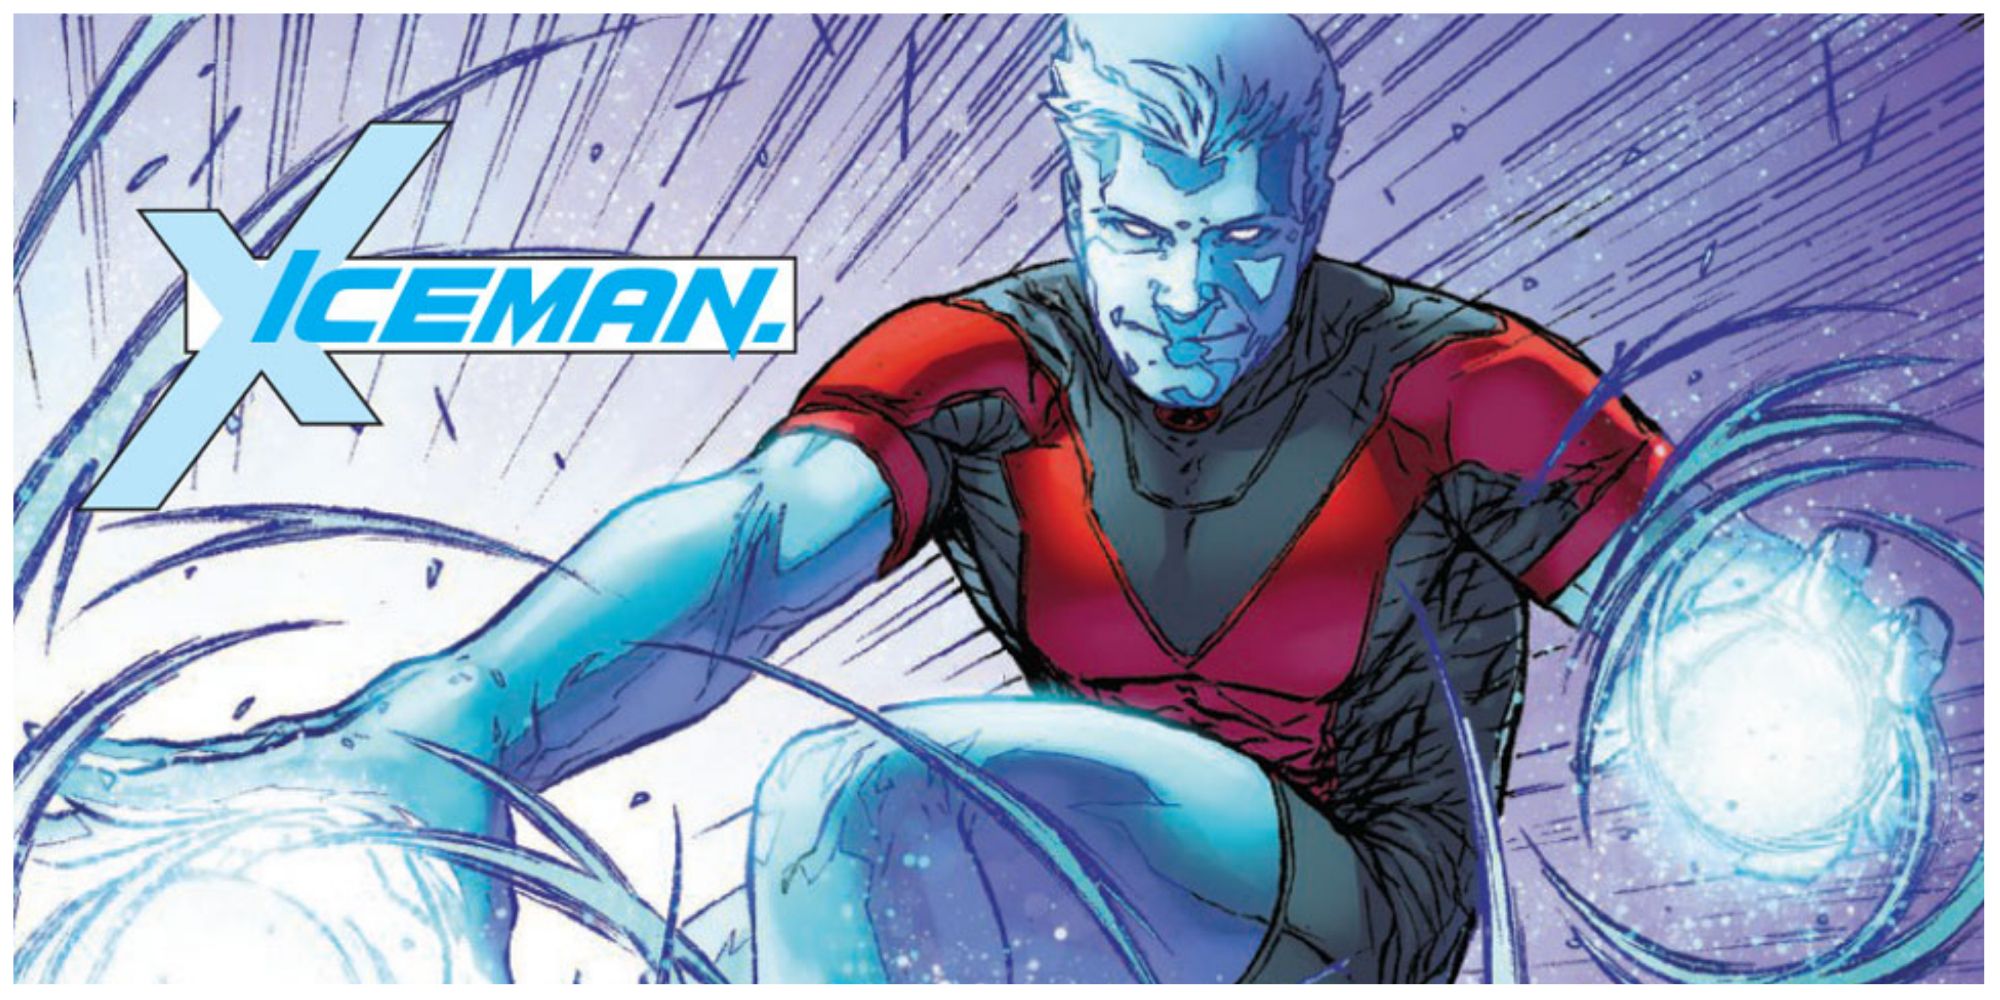 Bobby Drake is Iceman in X-Men comics